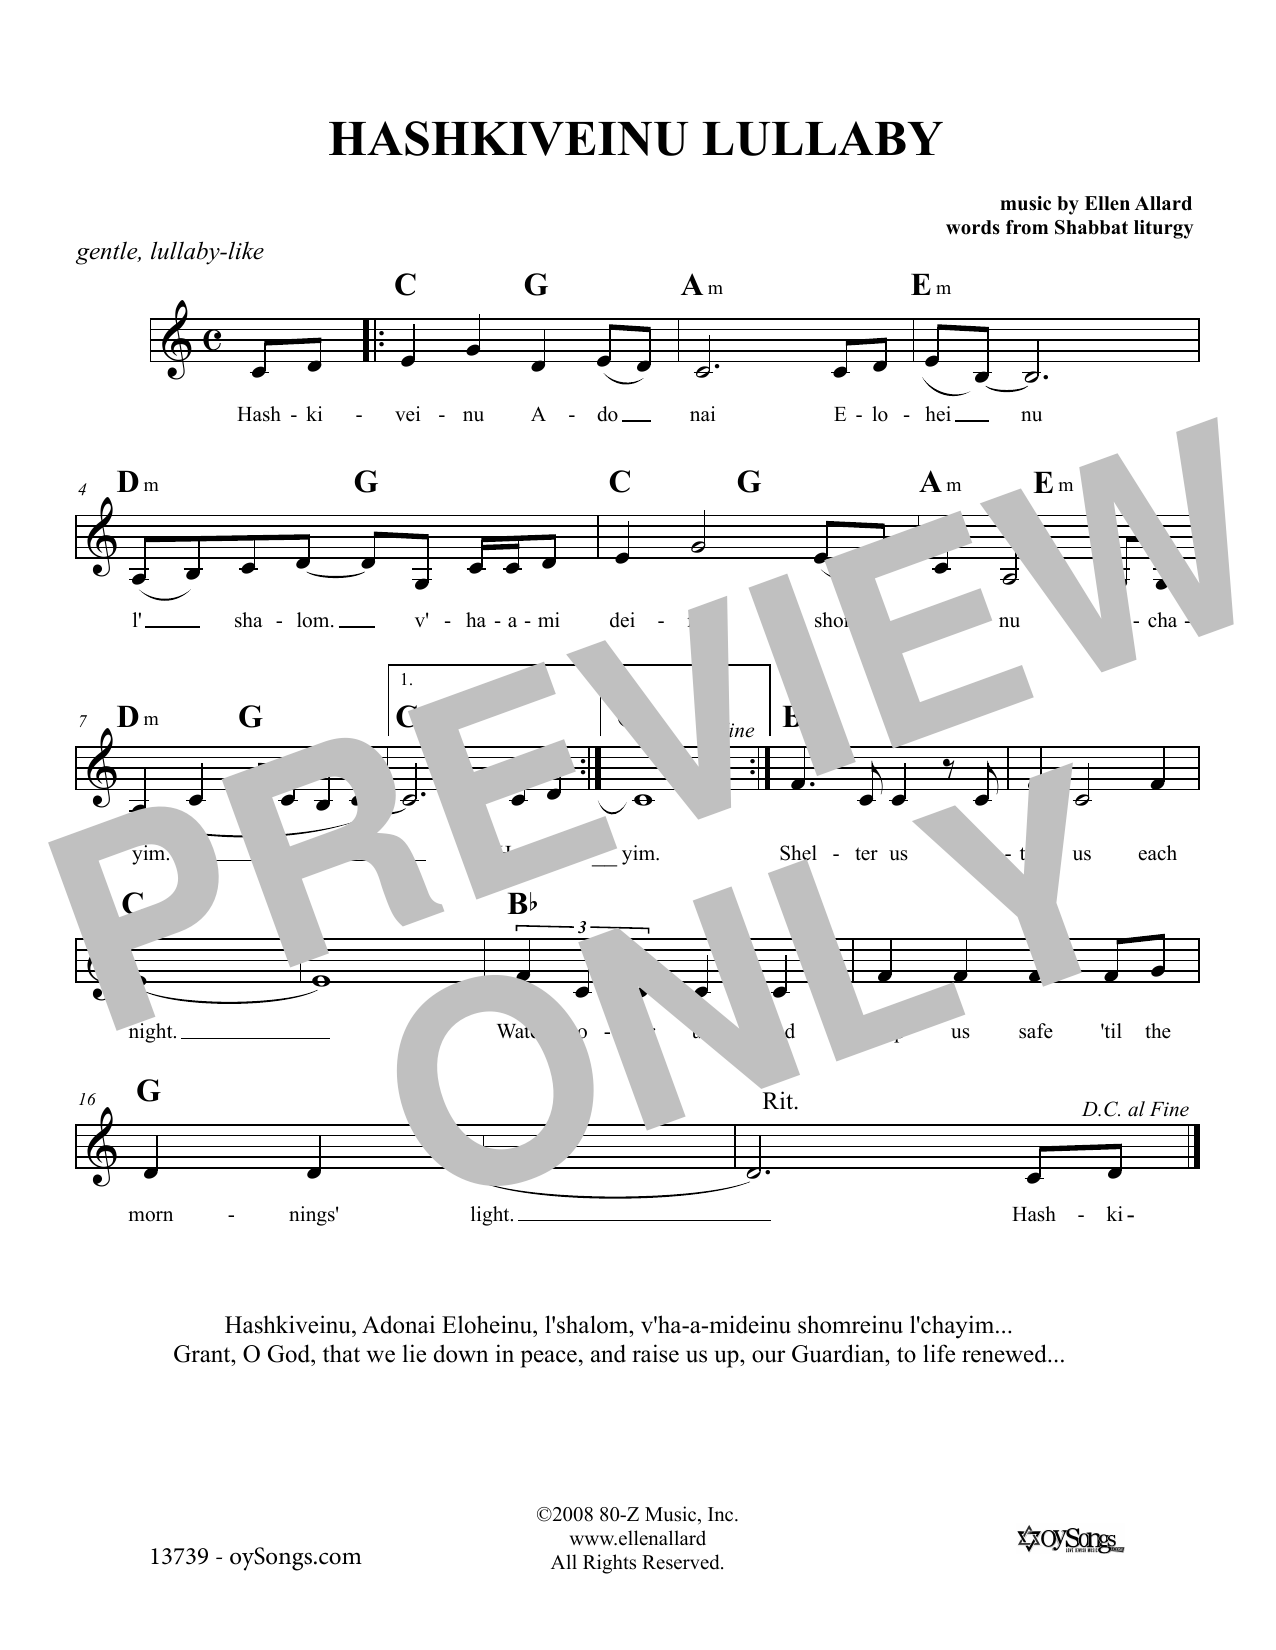 Ellen Allard Hashkiveinu Lullaby Sheet Music Notes & Chords for Melody Line, Lyrics & Chords - Download or Print PDF